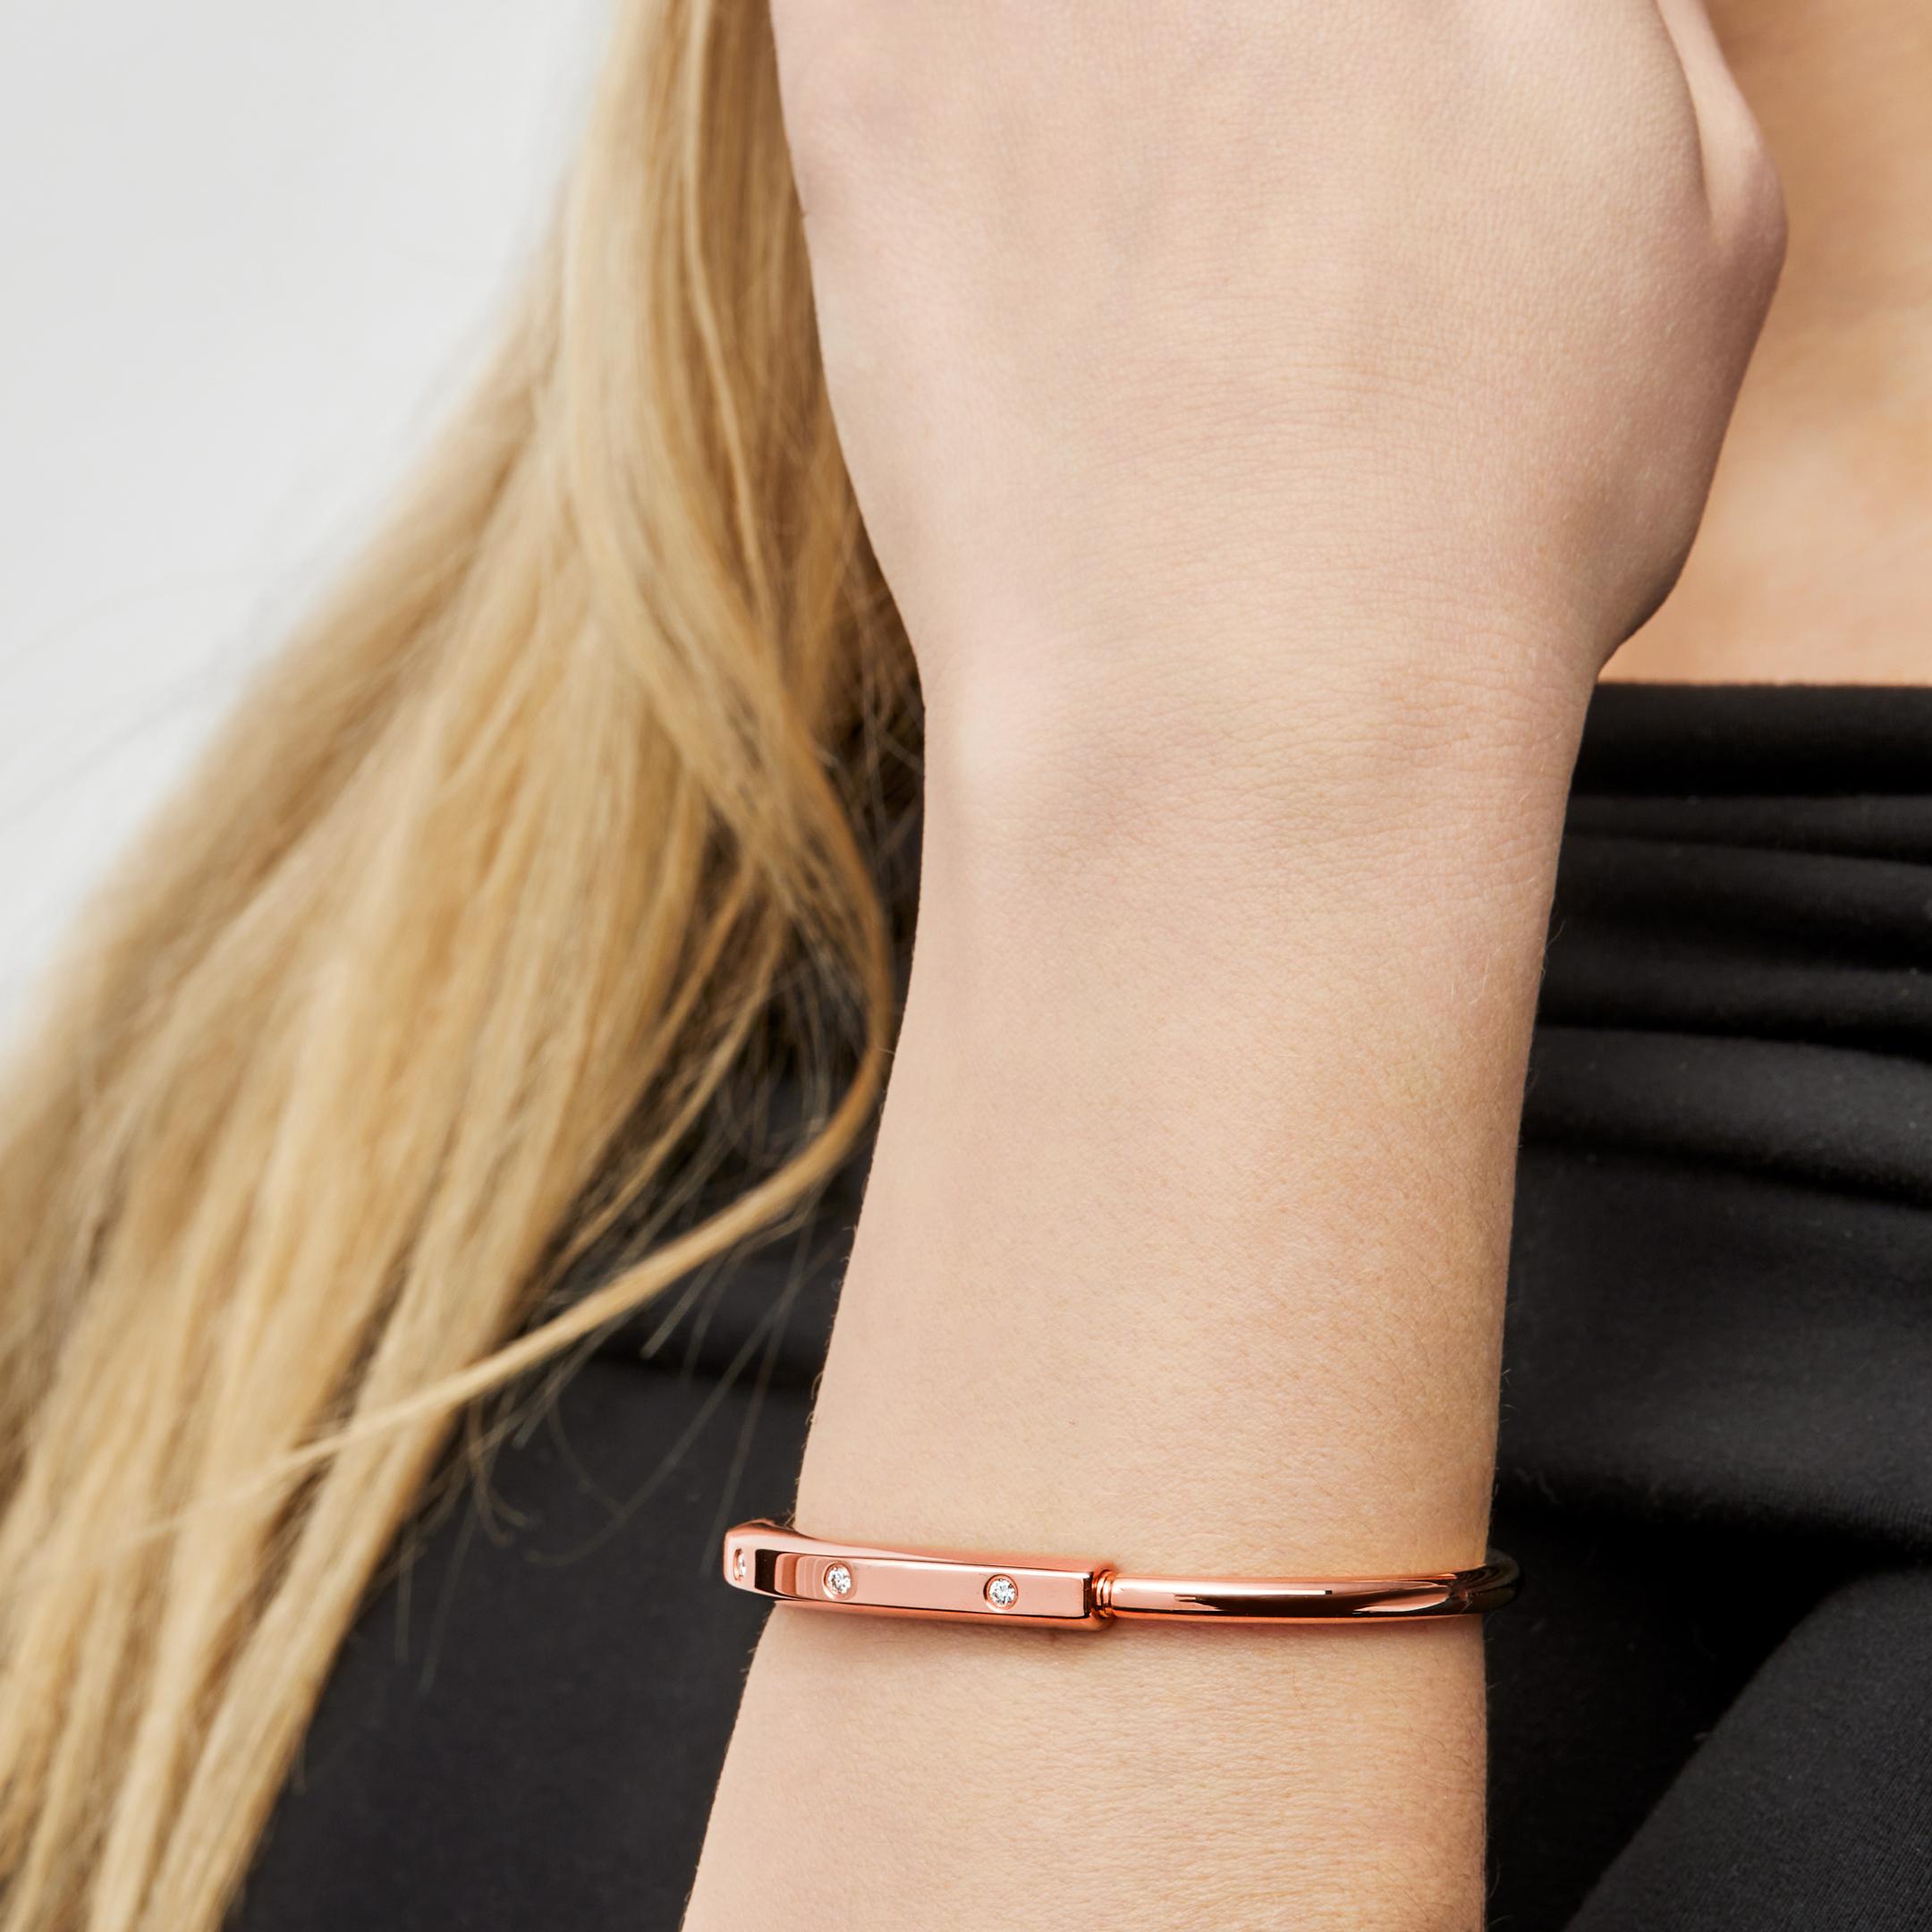 Conçu pour être porté par tous les sexes, le bracelet à serrure de Tiffany & Co est une déclaration visuelle audacieuse sur les liens personnels. 

Réalisé en or jaune 18 carats, le bracelet Tiffany Lock présente un fermoir innovant, clin d'œil à